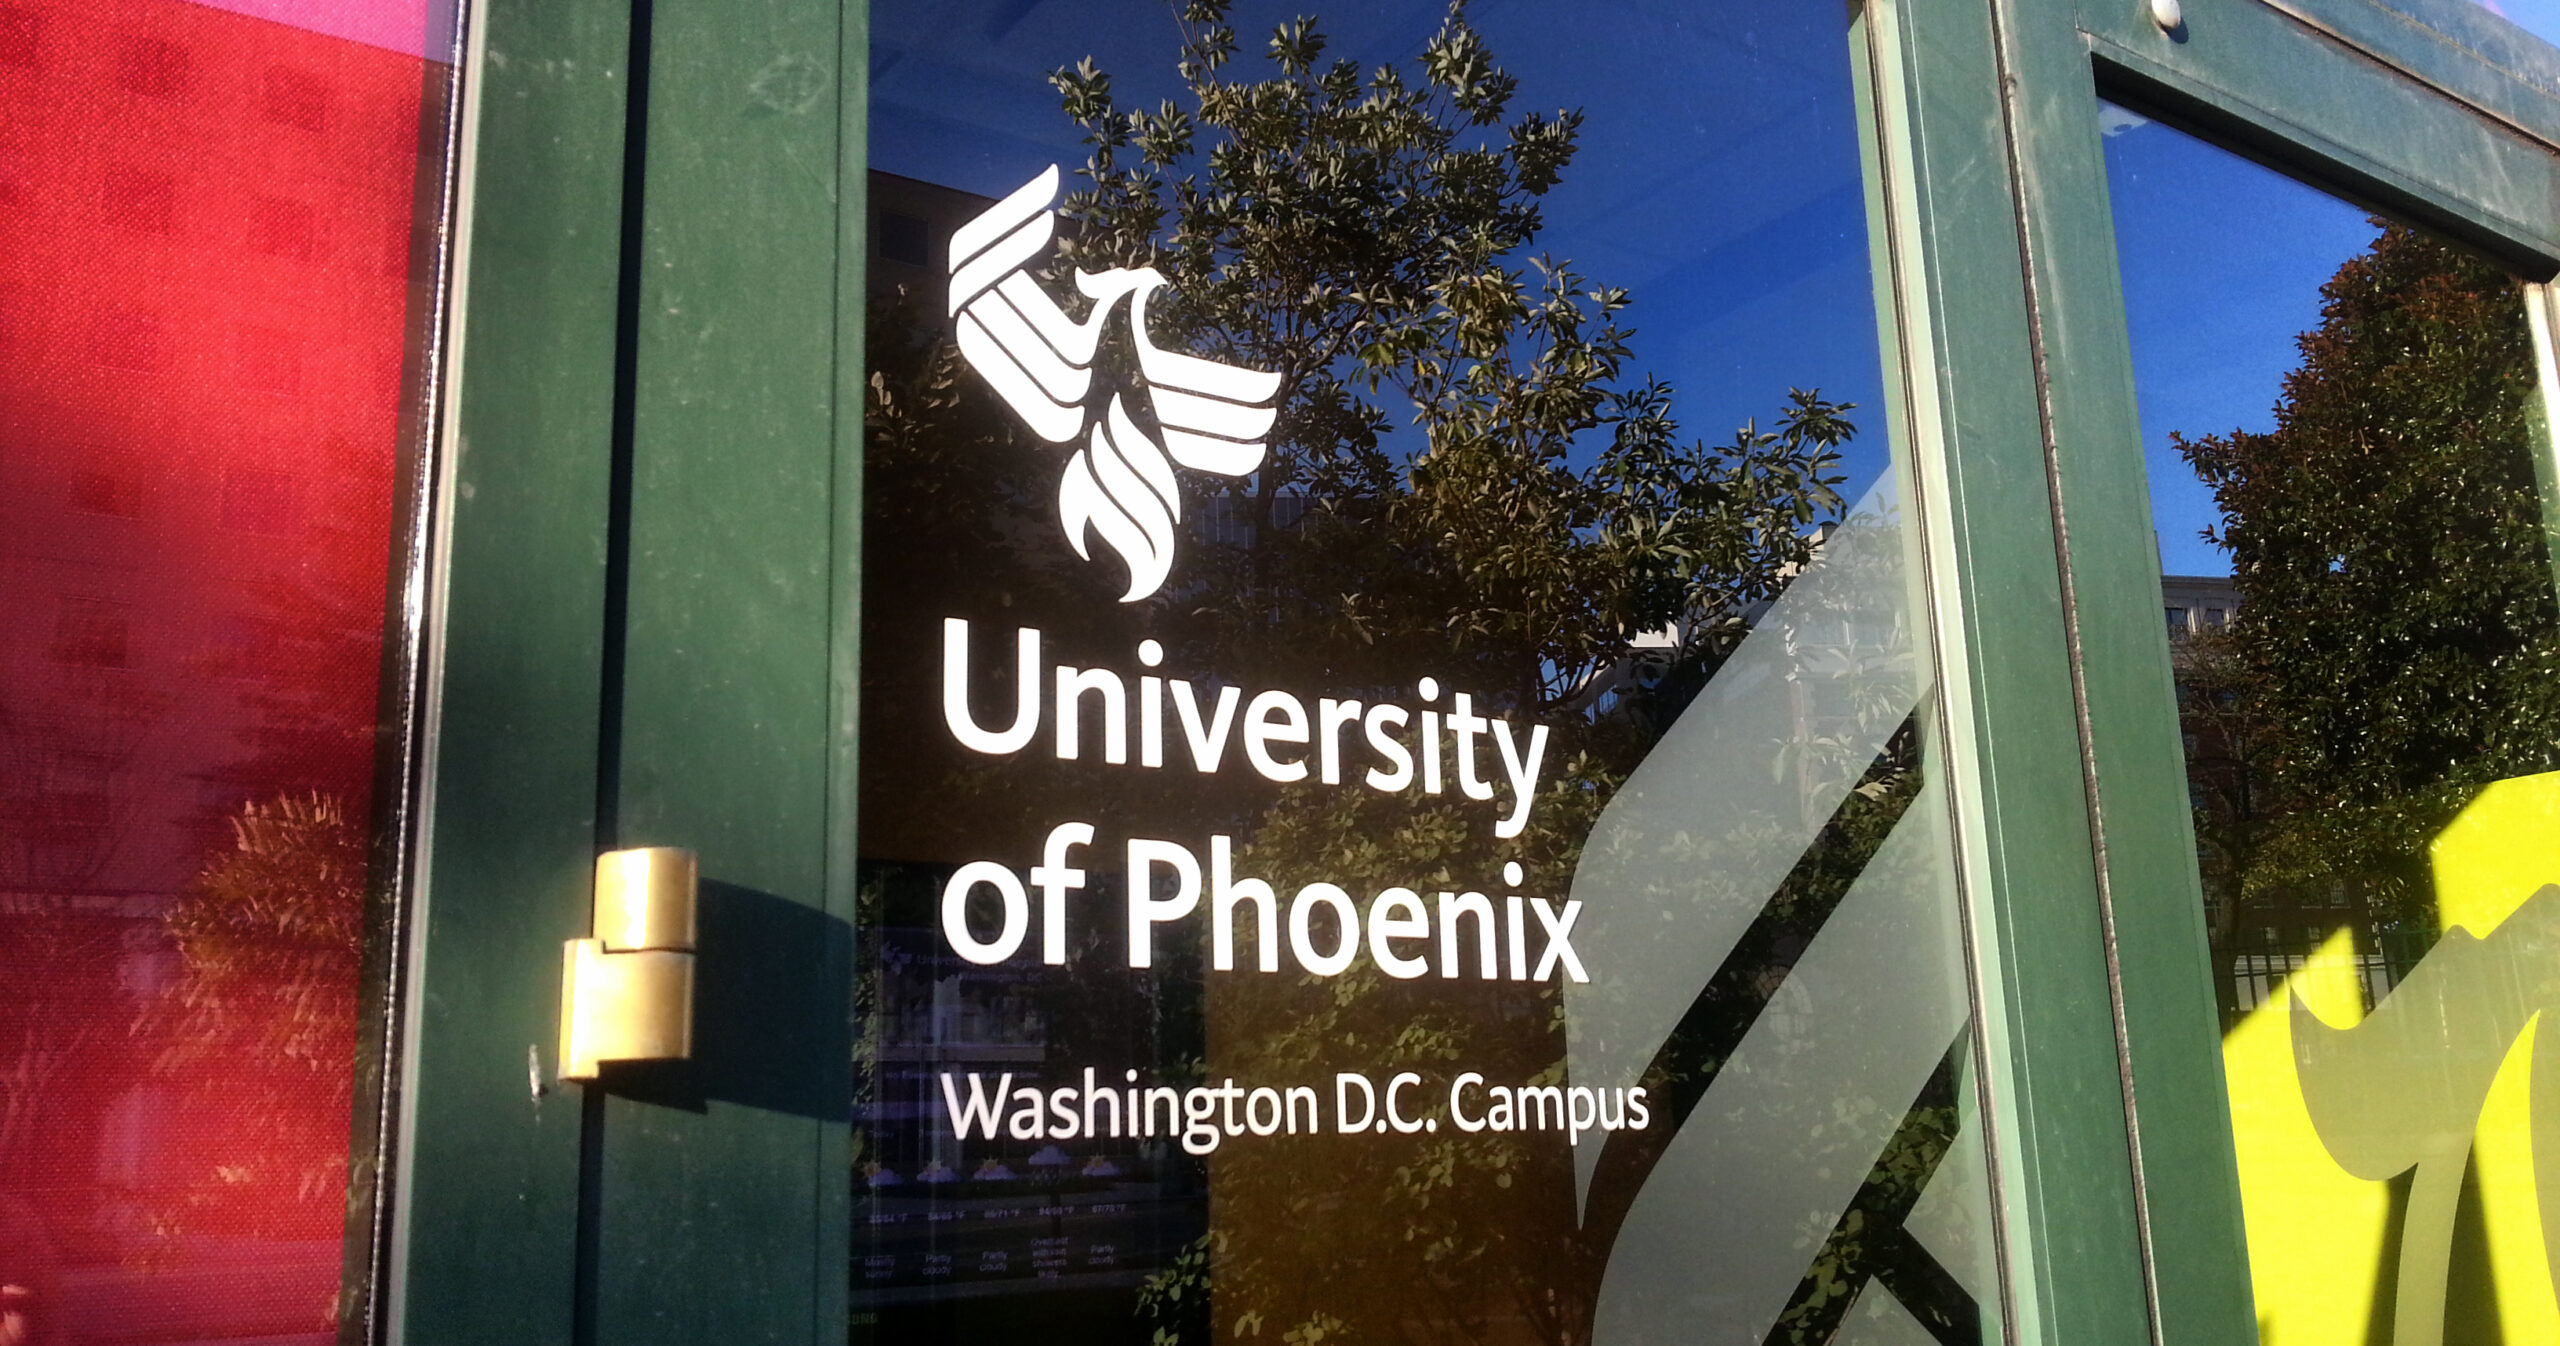 Apollo Education Group - University of Phoenix